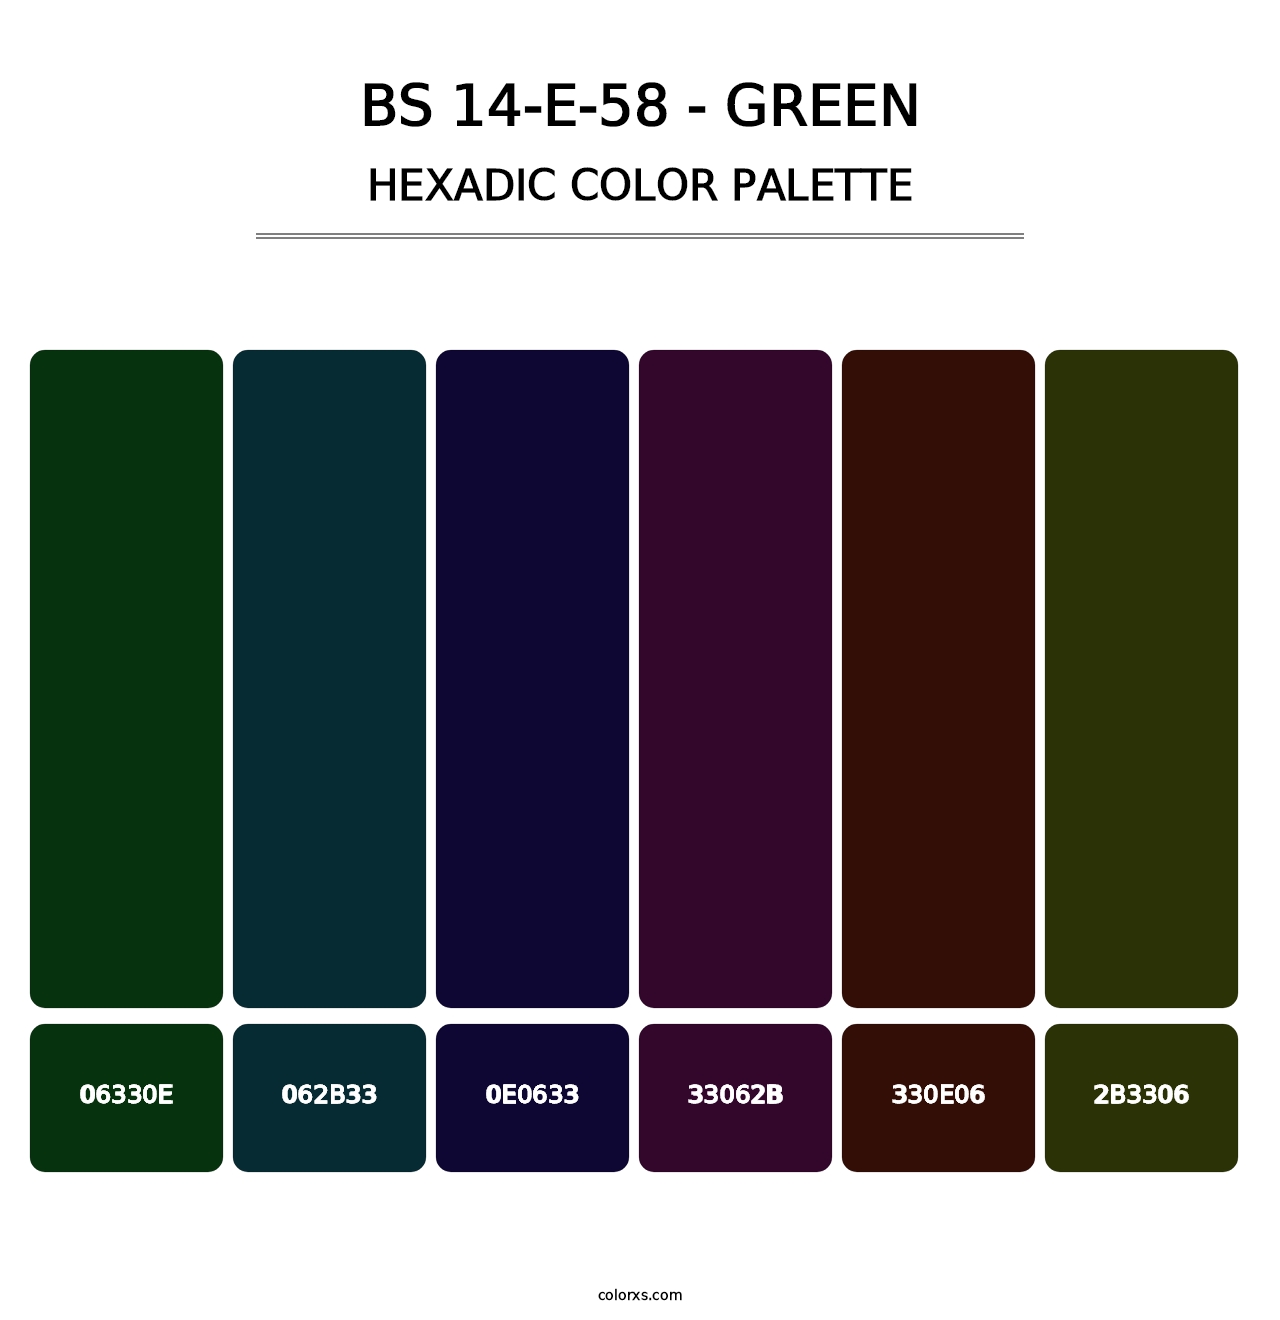 BS 14-E-58 - Green - Hexadic Color Palette